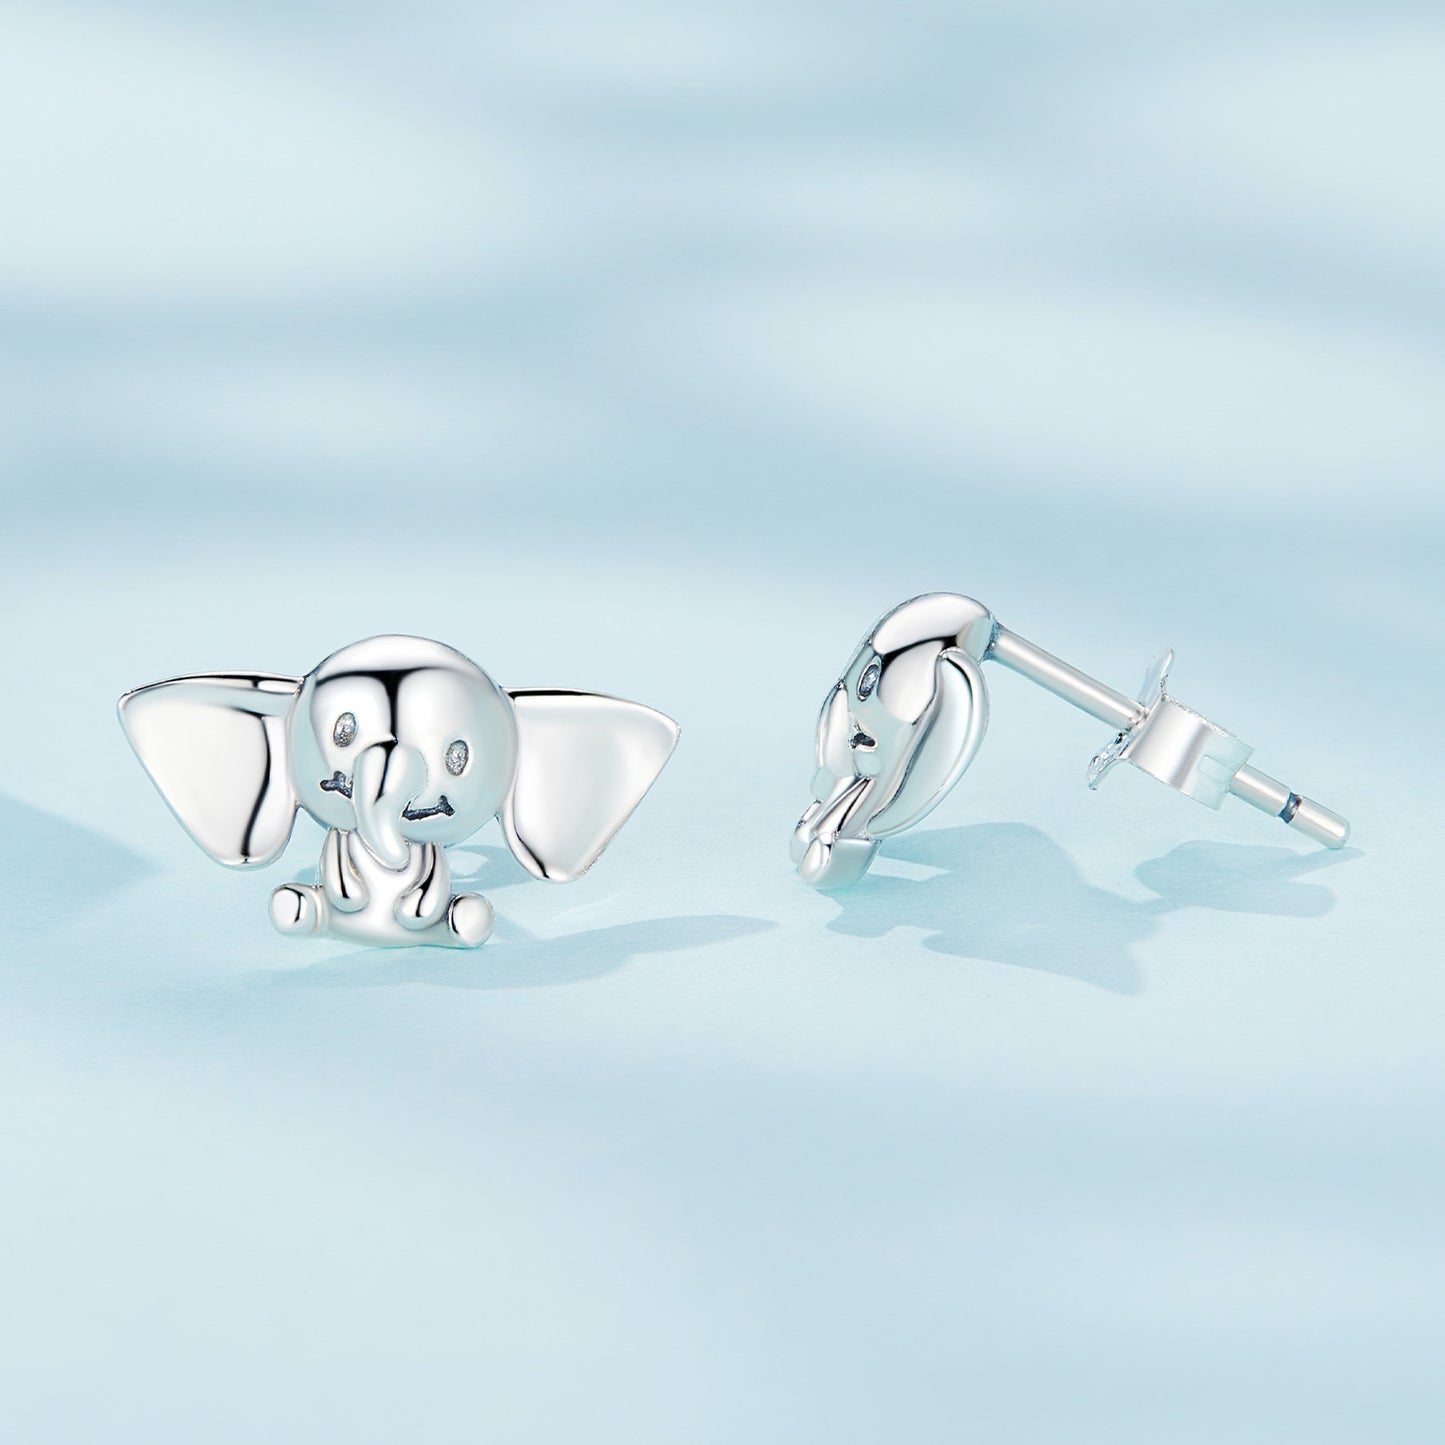 Elephant earrings,  92.5% Sterling Silver,  Cute animal ear stud